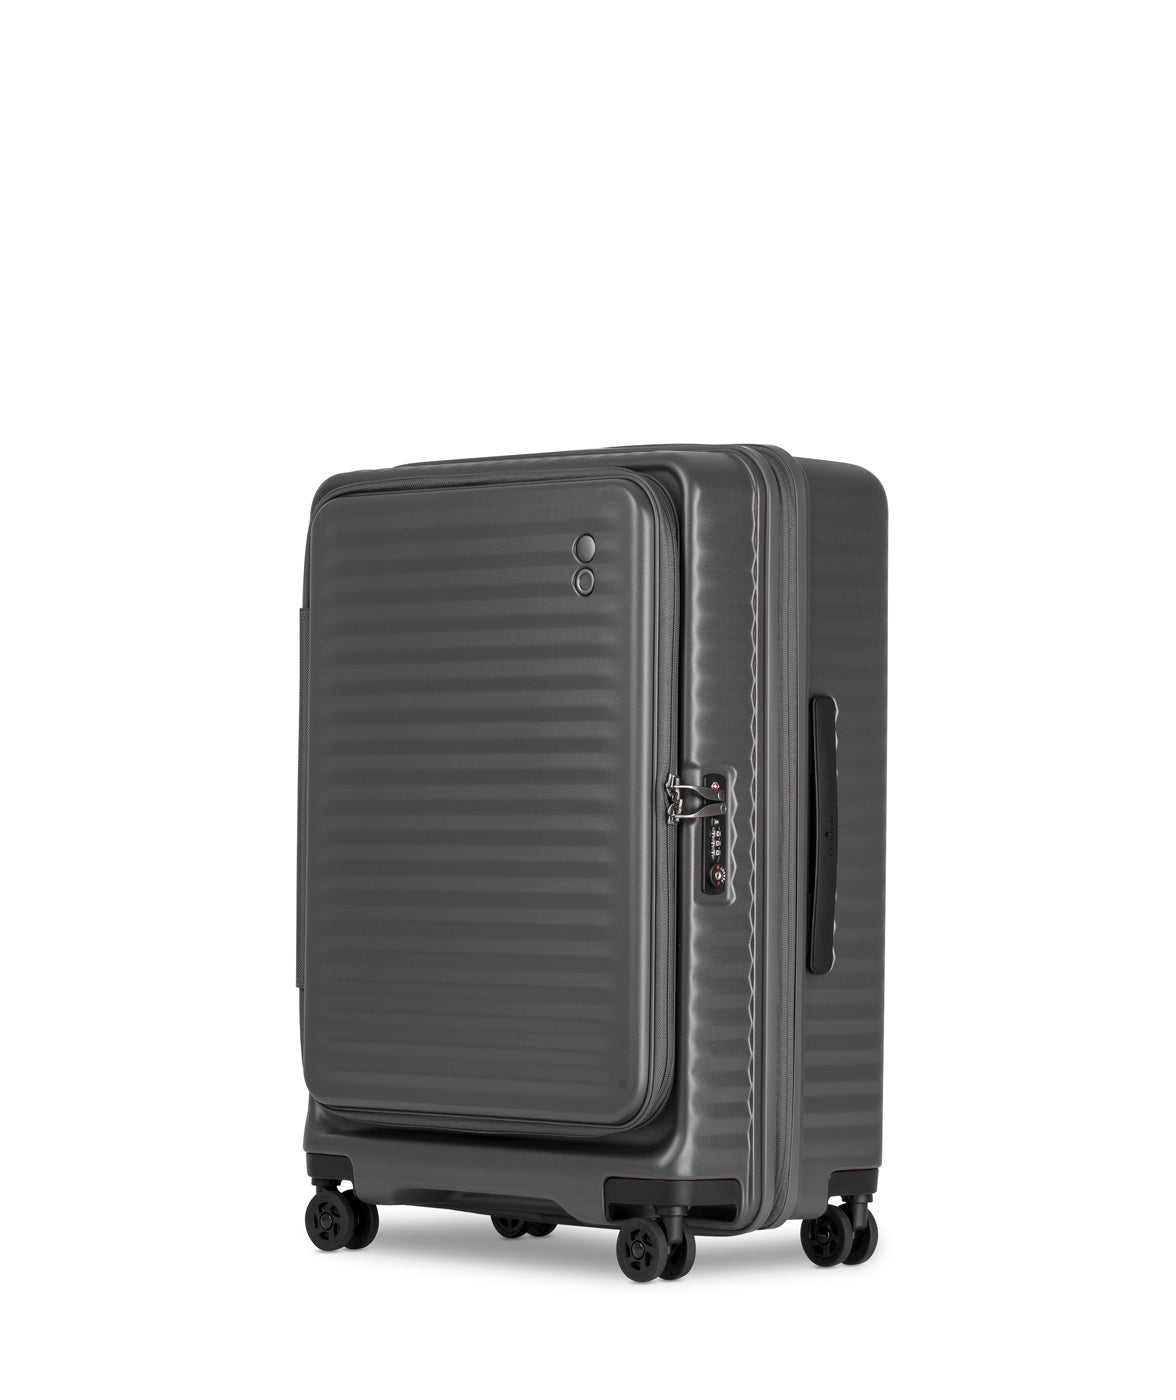 Echolac Celestra Suitcase, Medium 65 cm, Dark Grey von der Seite